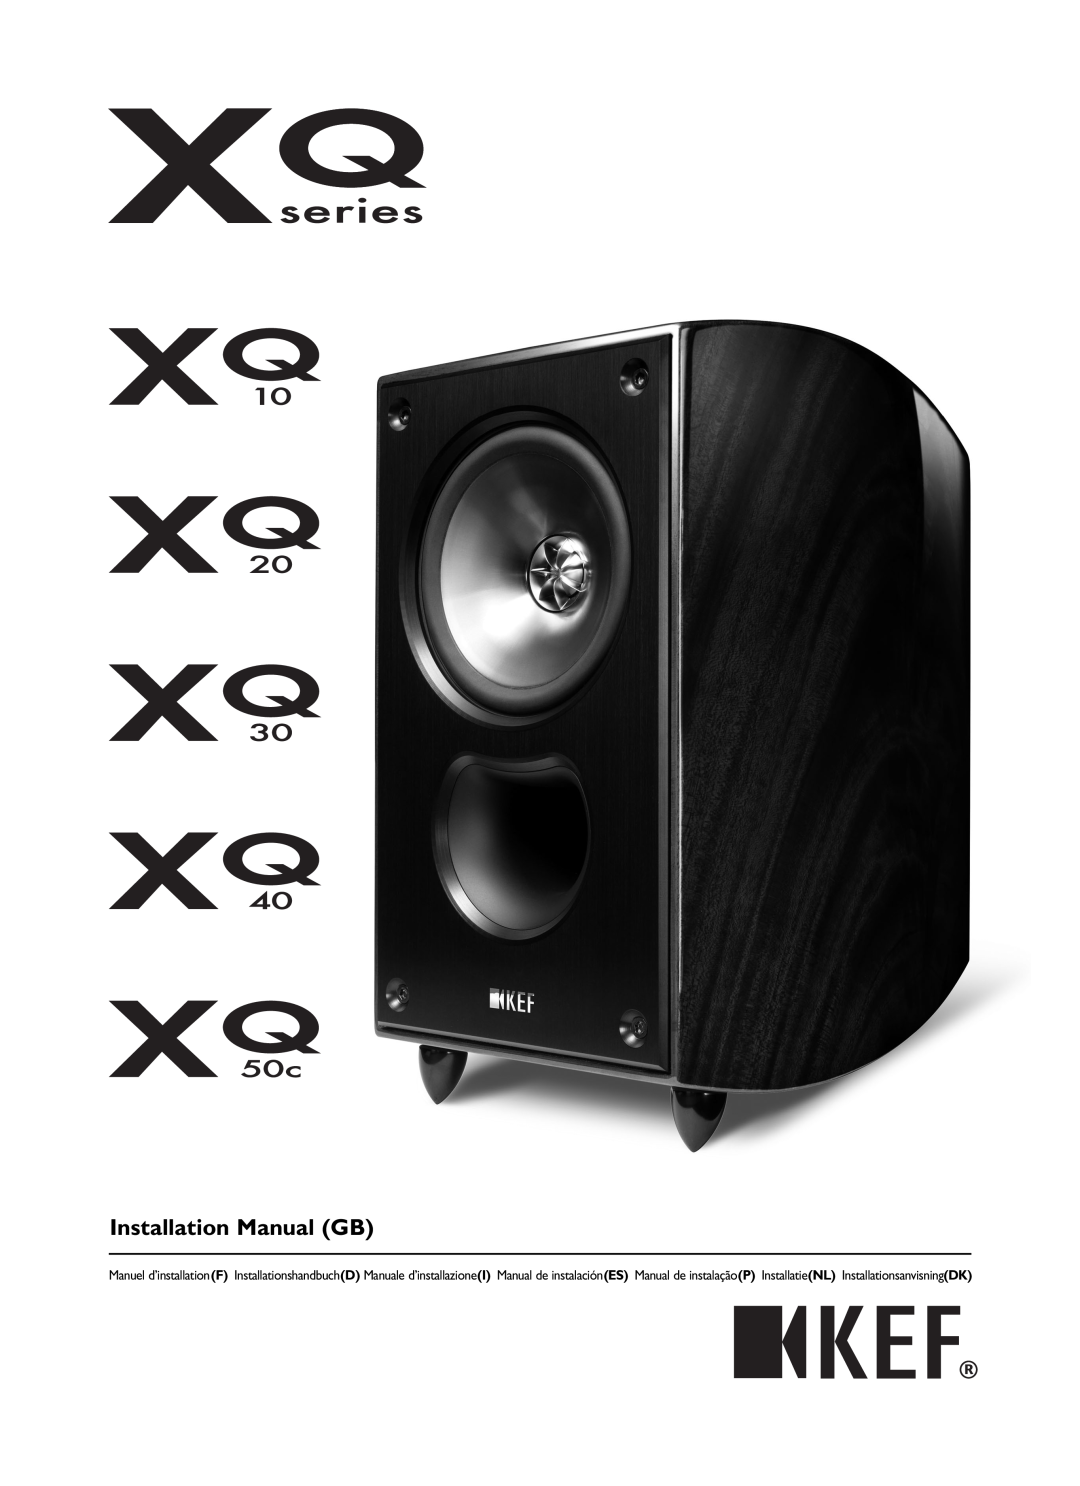 KEF Audio XQ20, XQ50C, XQ30, XQ40, XQ10 installation manual Installation Manual GB, XQ manual Rev06, 10/24/07, 11 39 AM 